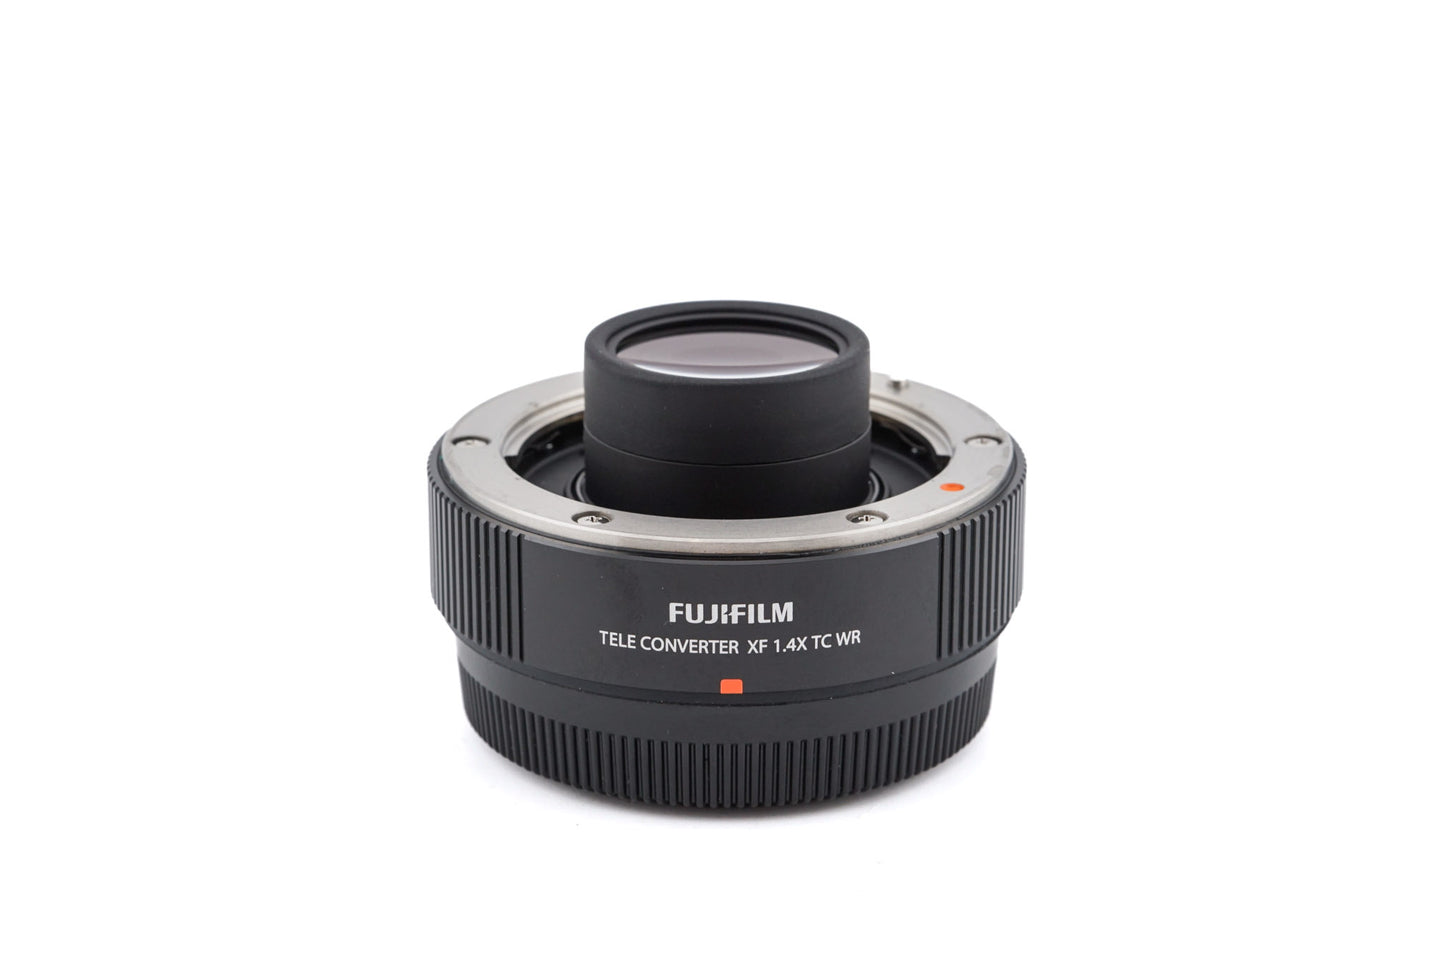 Fujifilm 1.4x TC WR Teleconverter XF